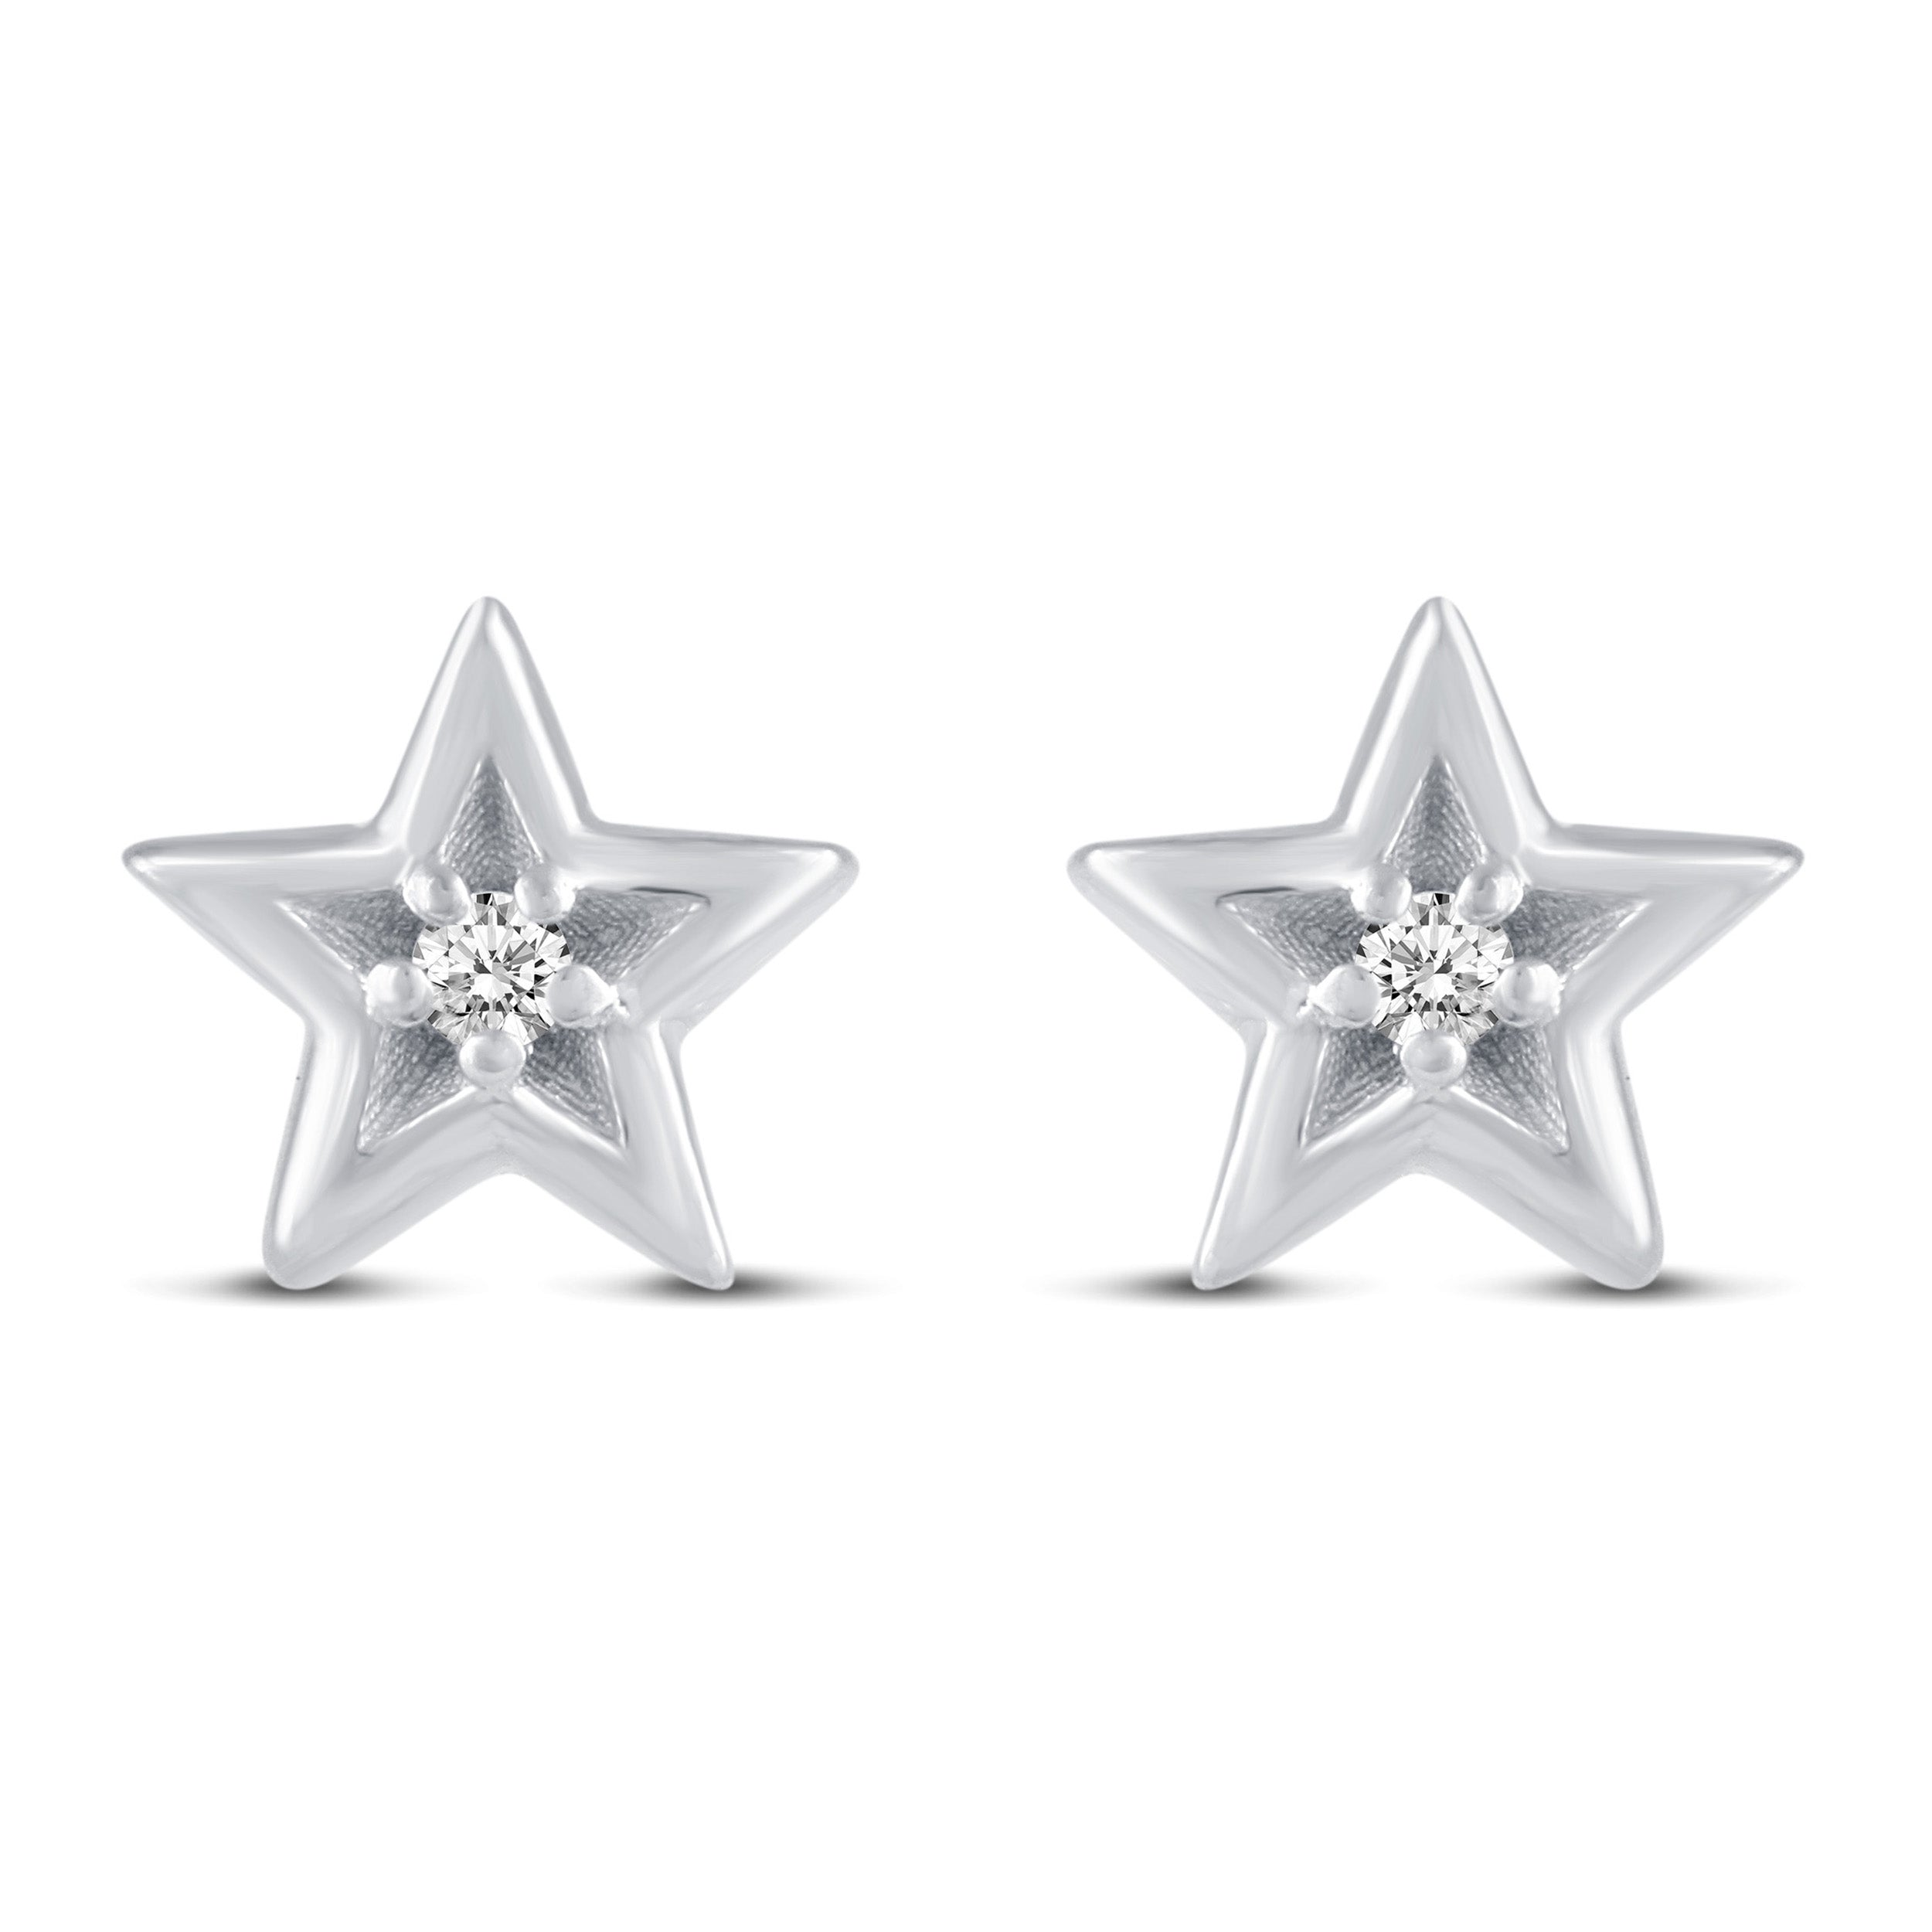 Details more than 220 black diamond star earrings super hot